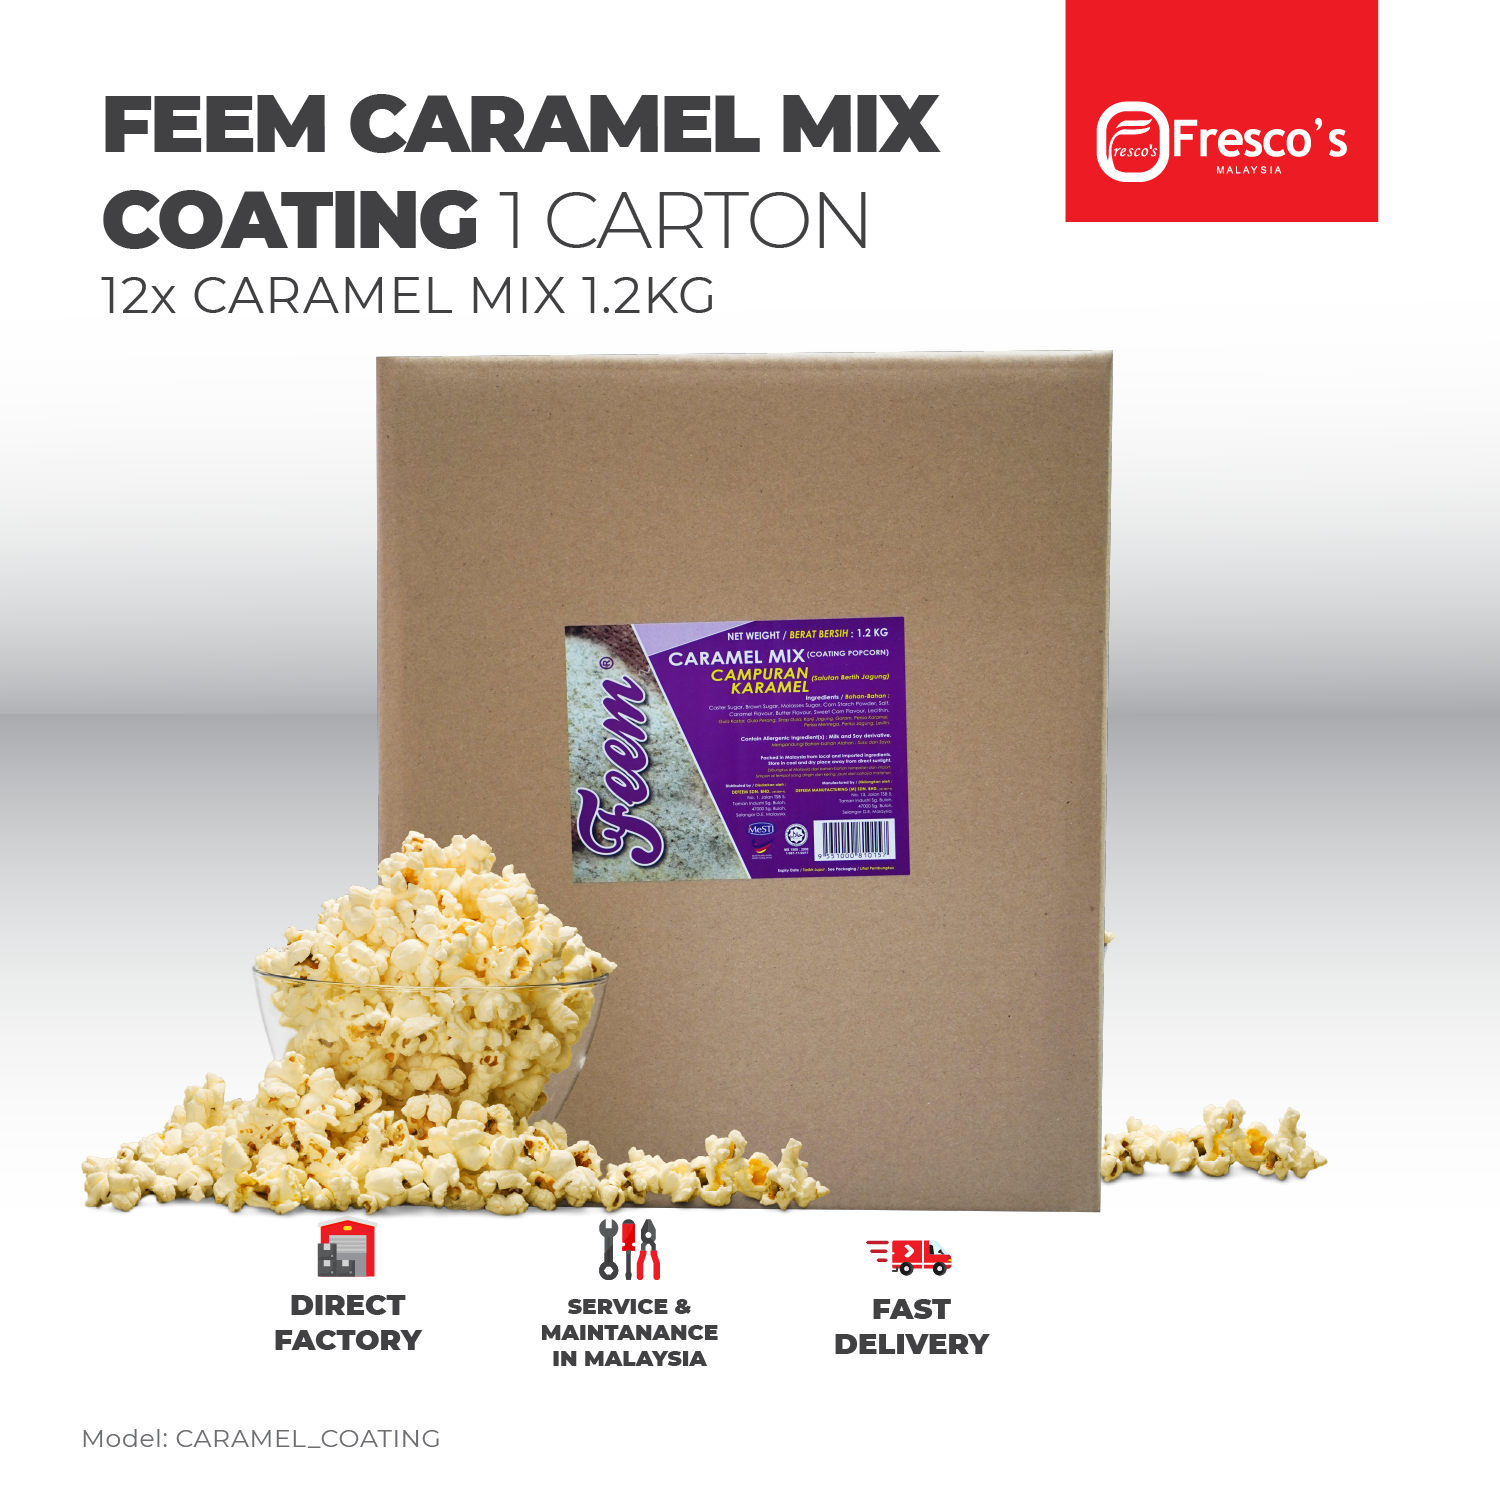 FEEM Caramel Mix Popcorn Coating 1 CARTON Karamel Campuran 1 CARTON